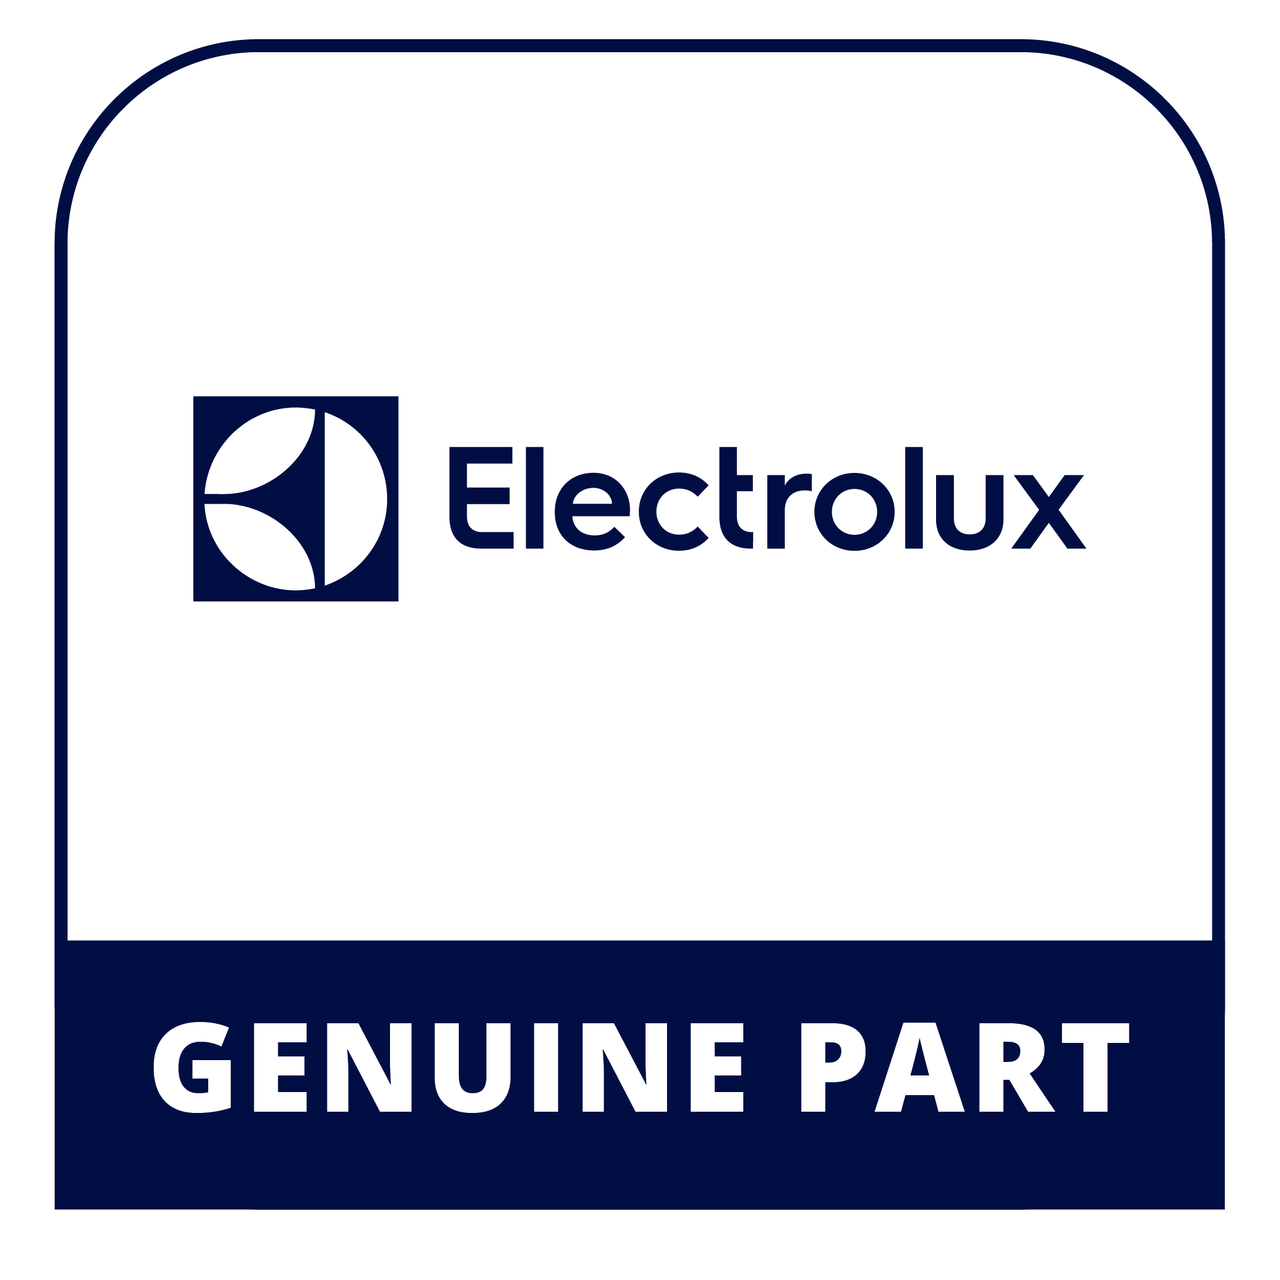 Frigidaire - Electrolux 5303207102 - Strike - Genuine Electrolux Part